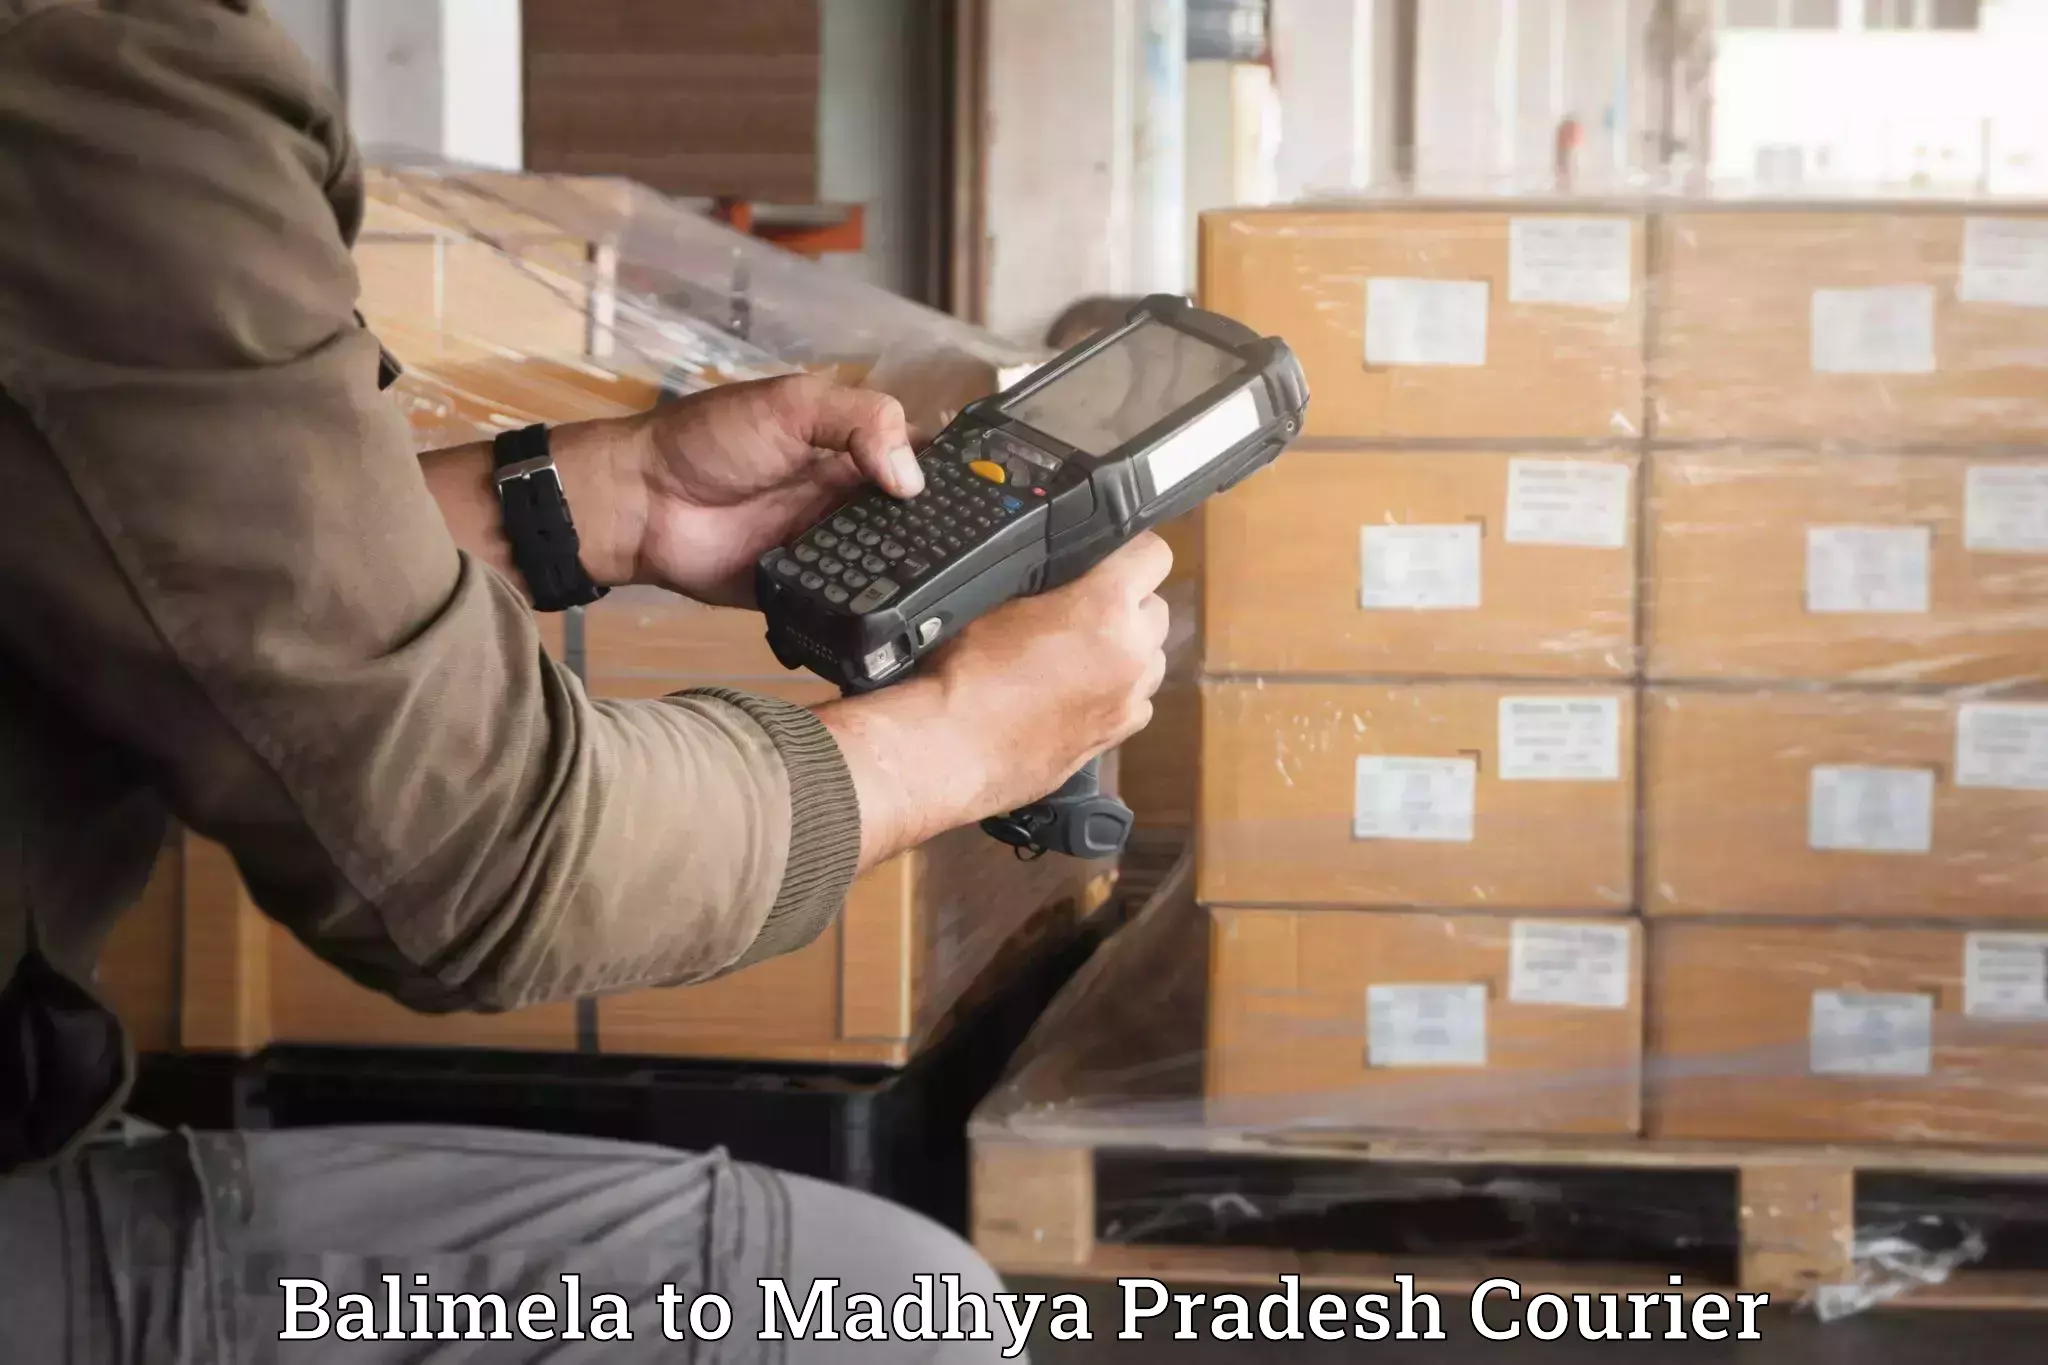 Expert goods movers Balimela to IIIT Bhopal